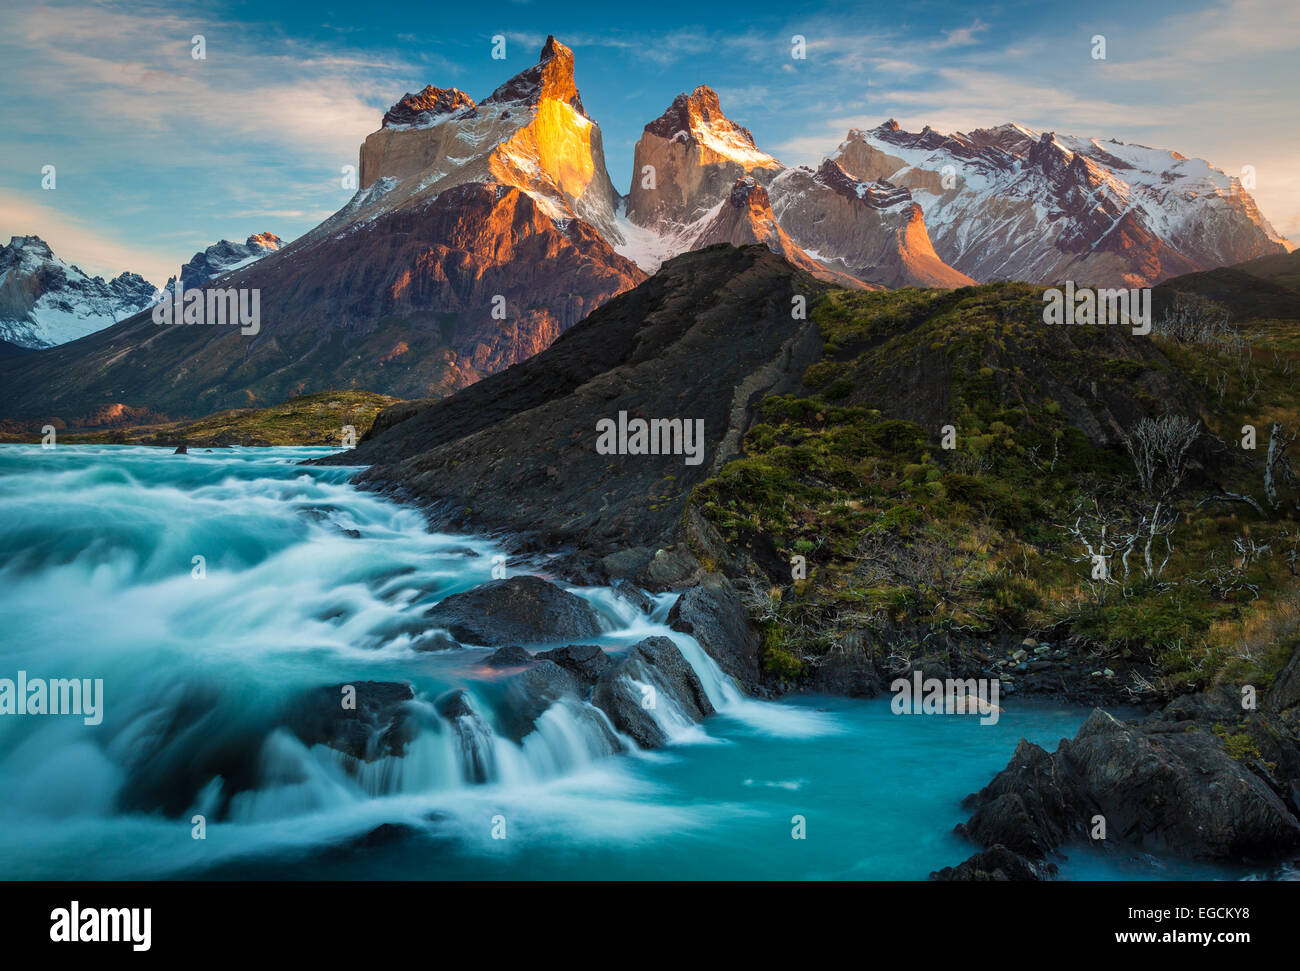 Los Cuernos s'élevant au-dessus de Salto Grande et Lago Nordenskjold, Torres del Paine, Patagonie Chilienne Banque D'Images